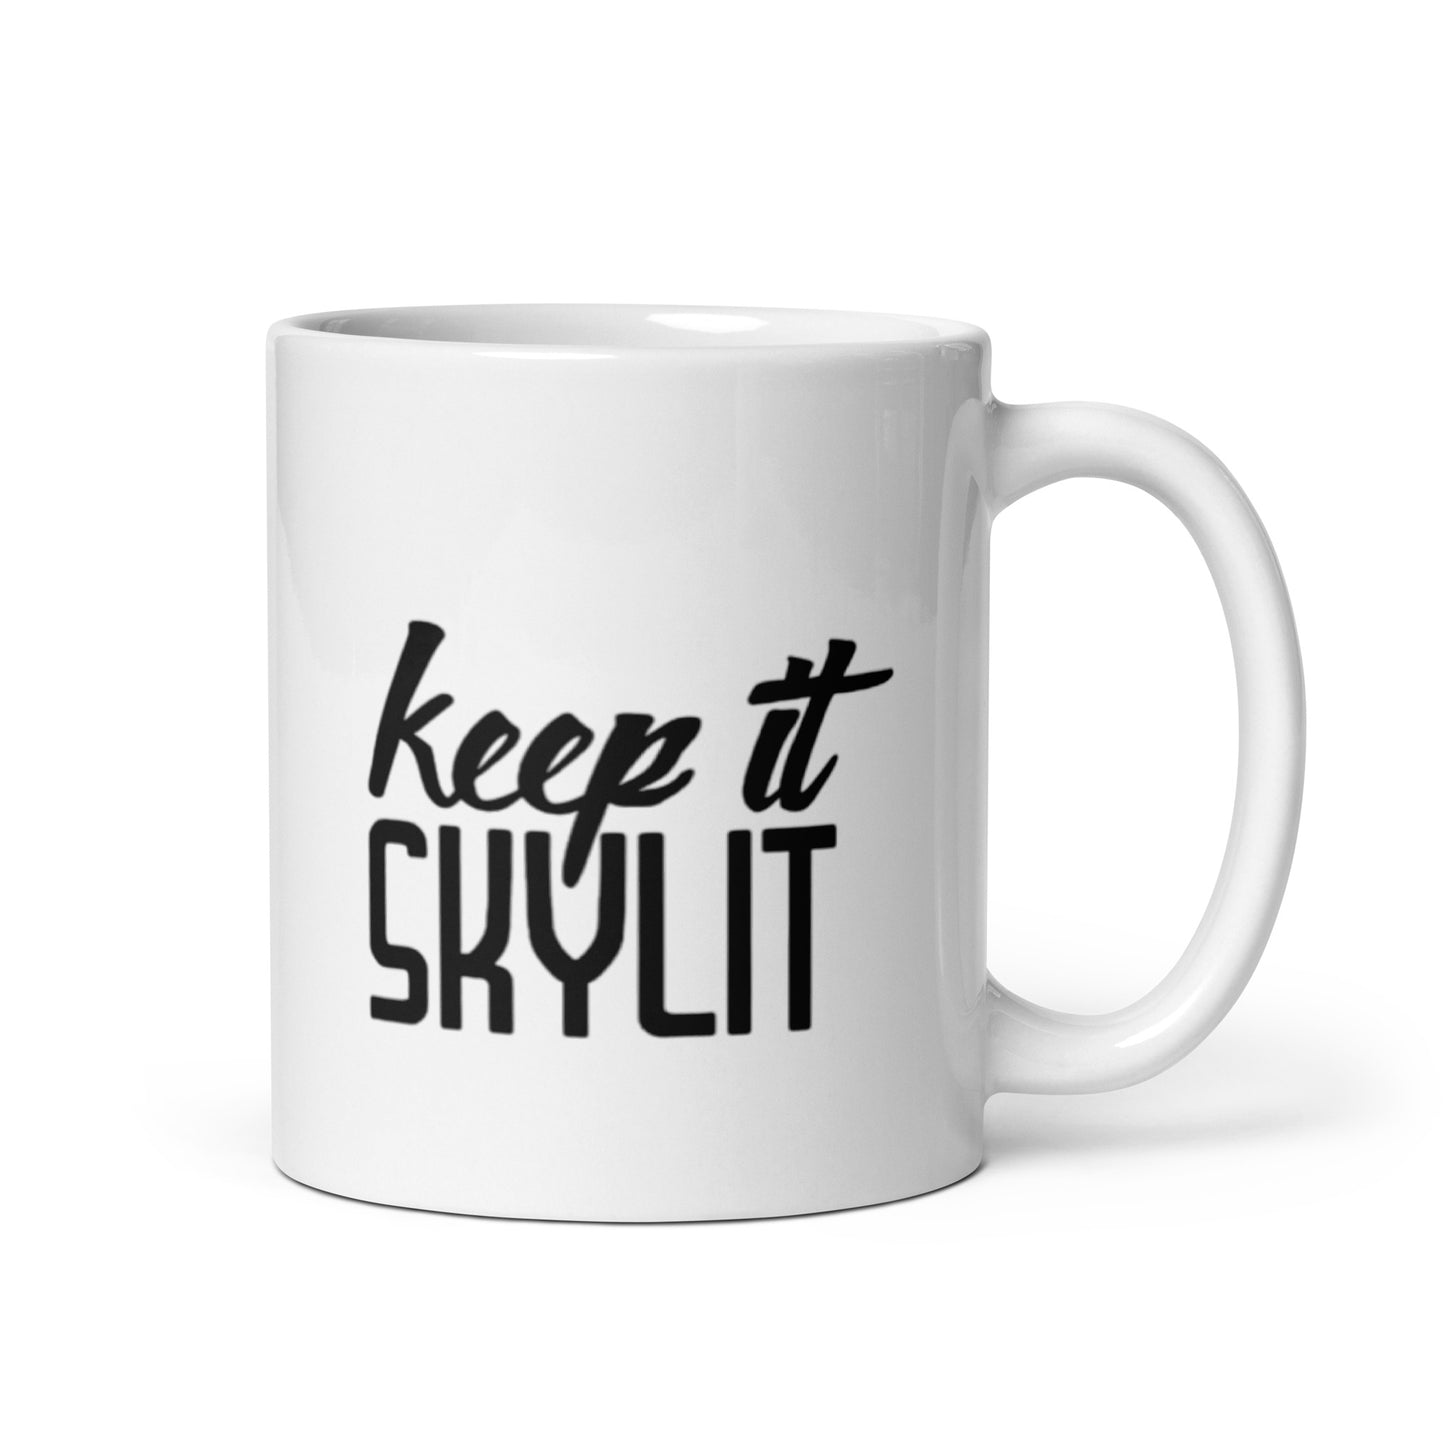 Keep it Skylit coffee mug